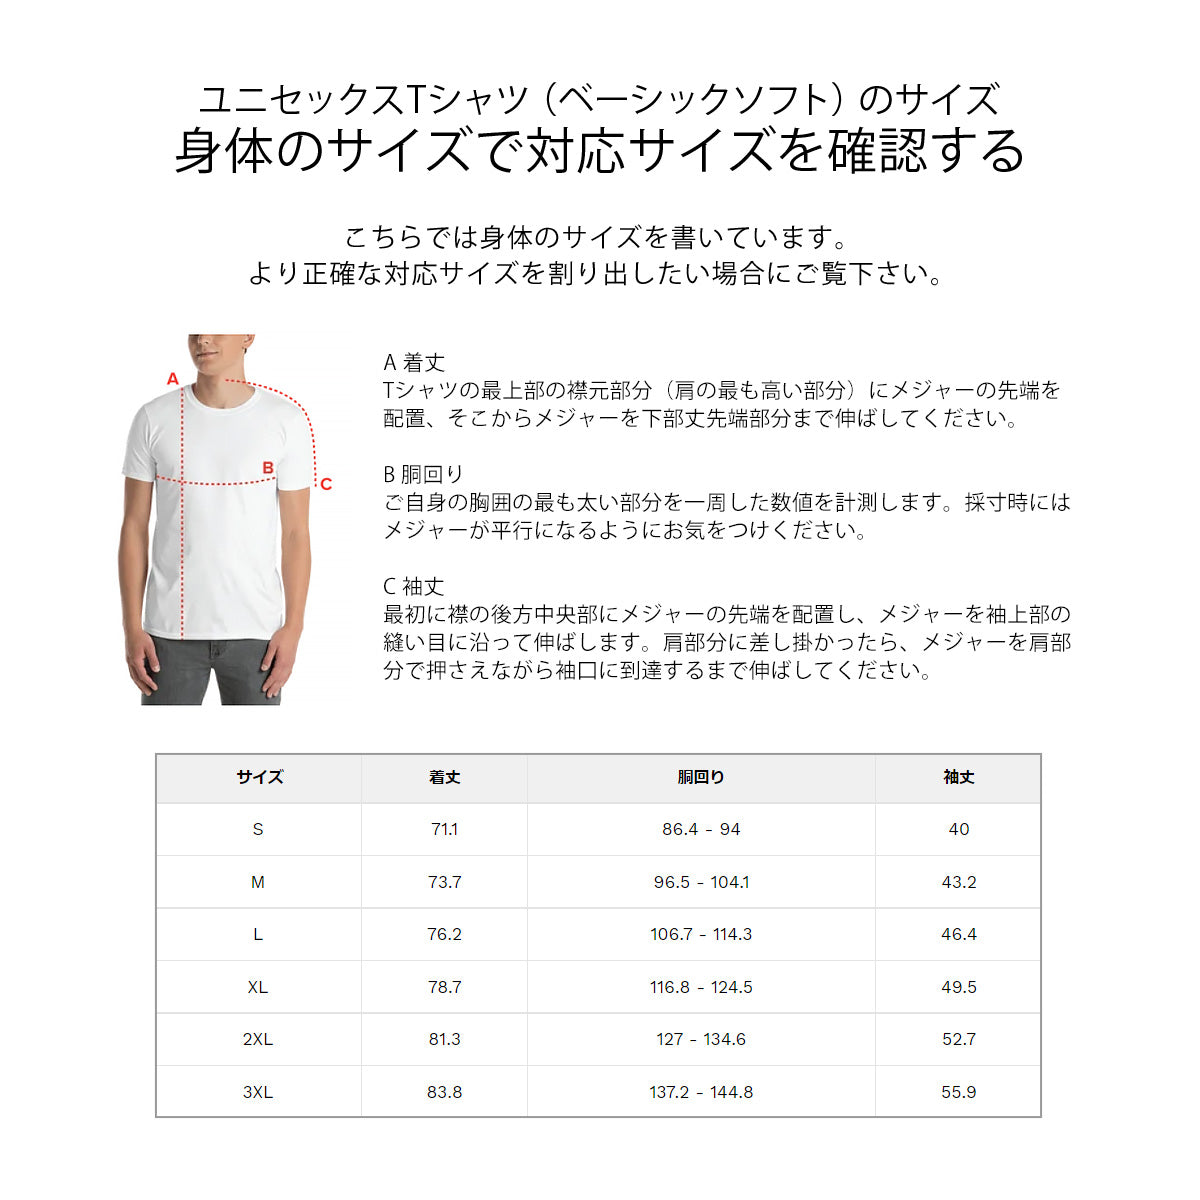 Tシャツ かわいい デザイン おしゃれ 大人可愛い 人気 通販 シロクマ【半袖/レディース/メンズ】